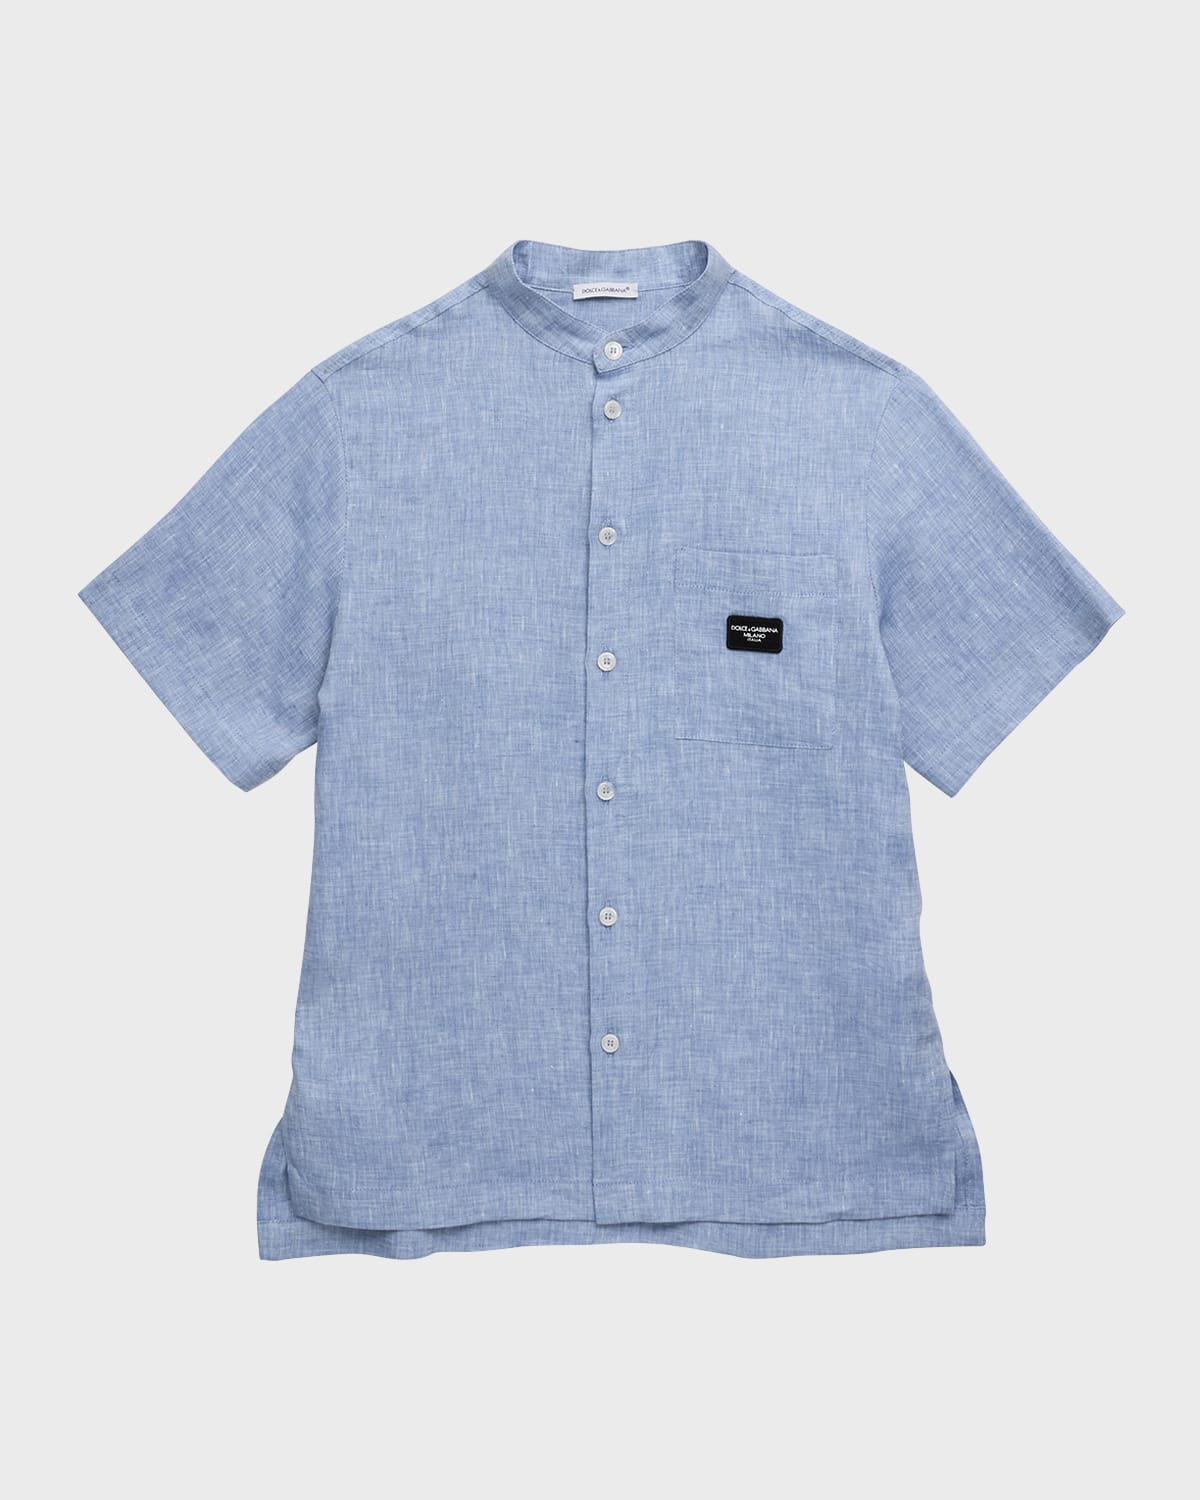 Dolce & Gabbana Kids' Boy's Logo Patch Linen Shirt In Light Blue